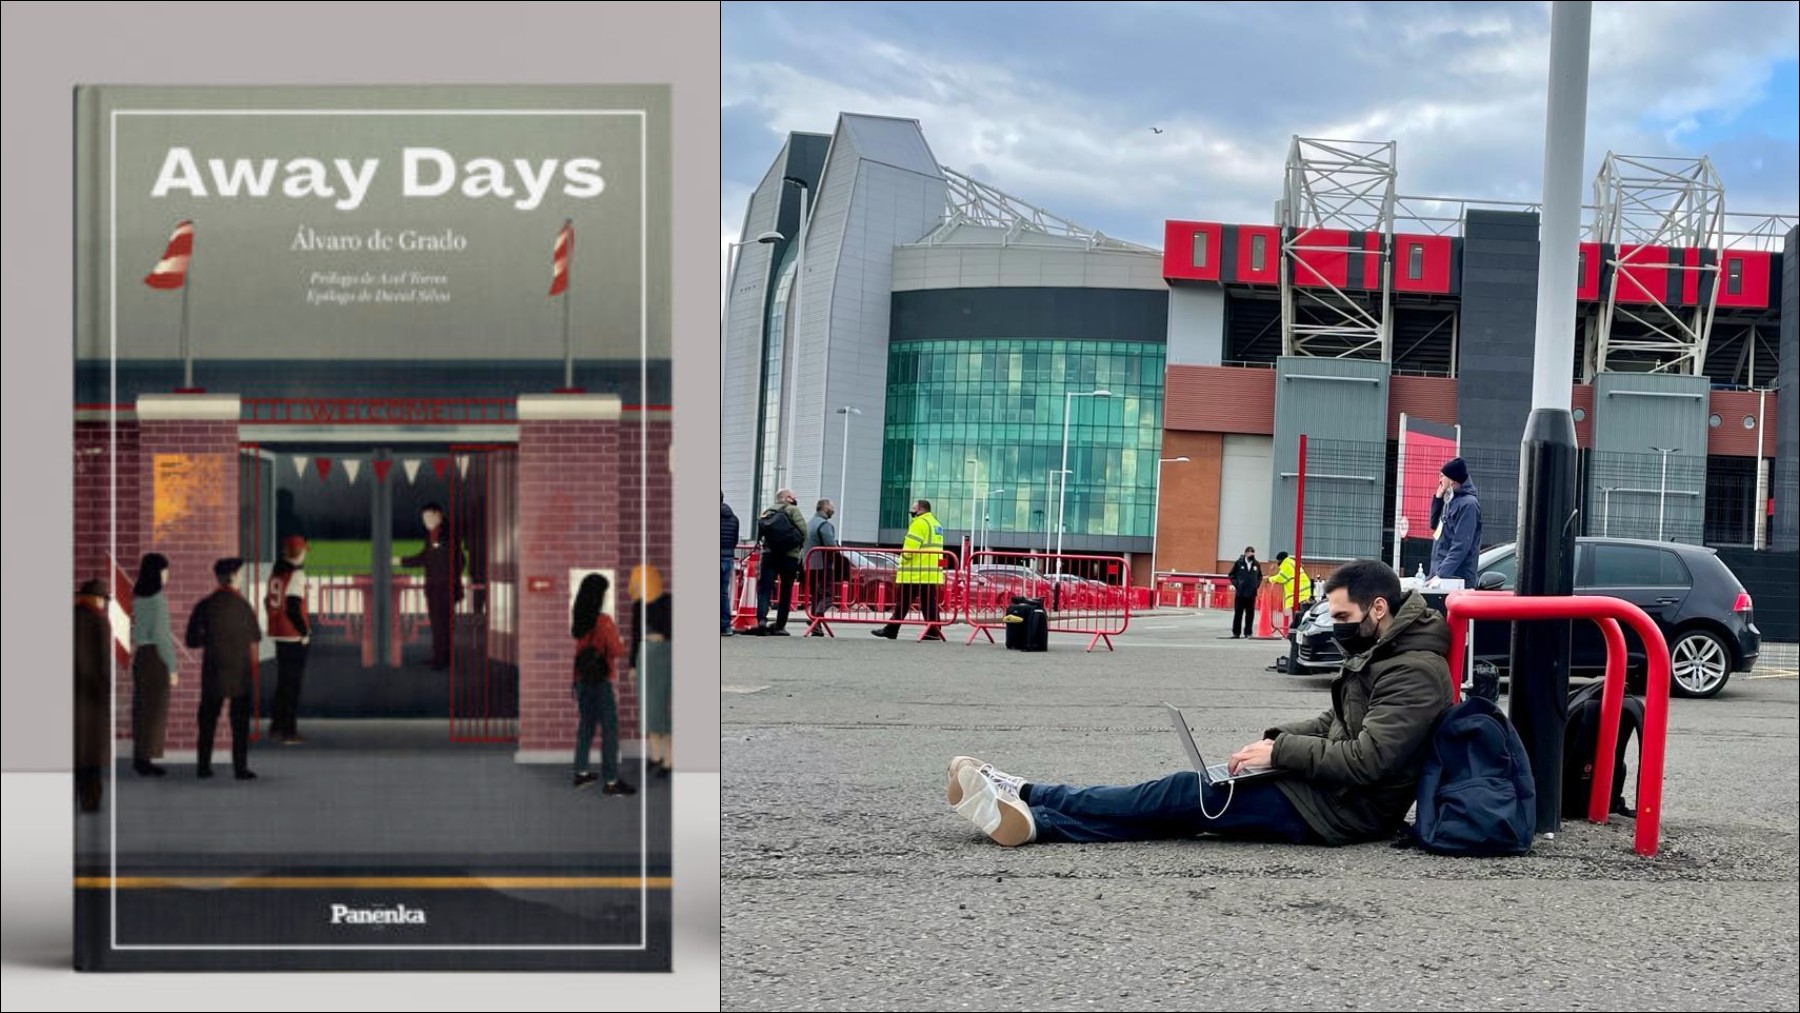 Away Days, un libro de fútbol y vida.